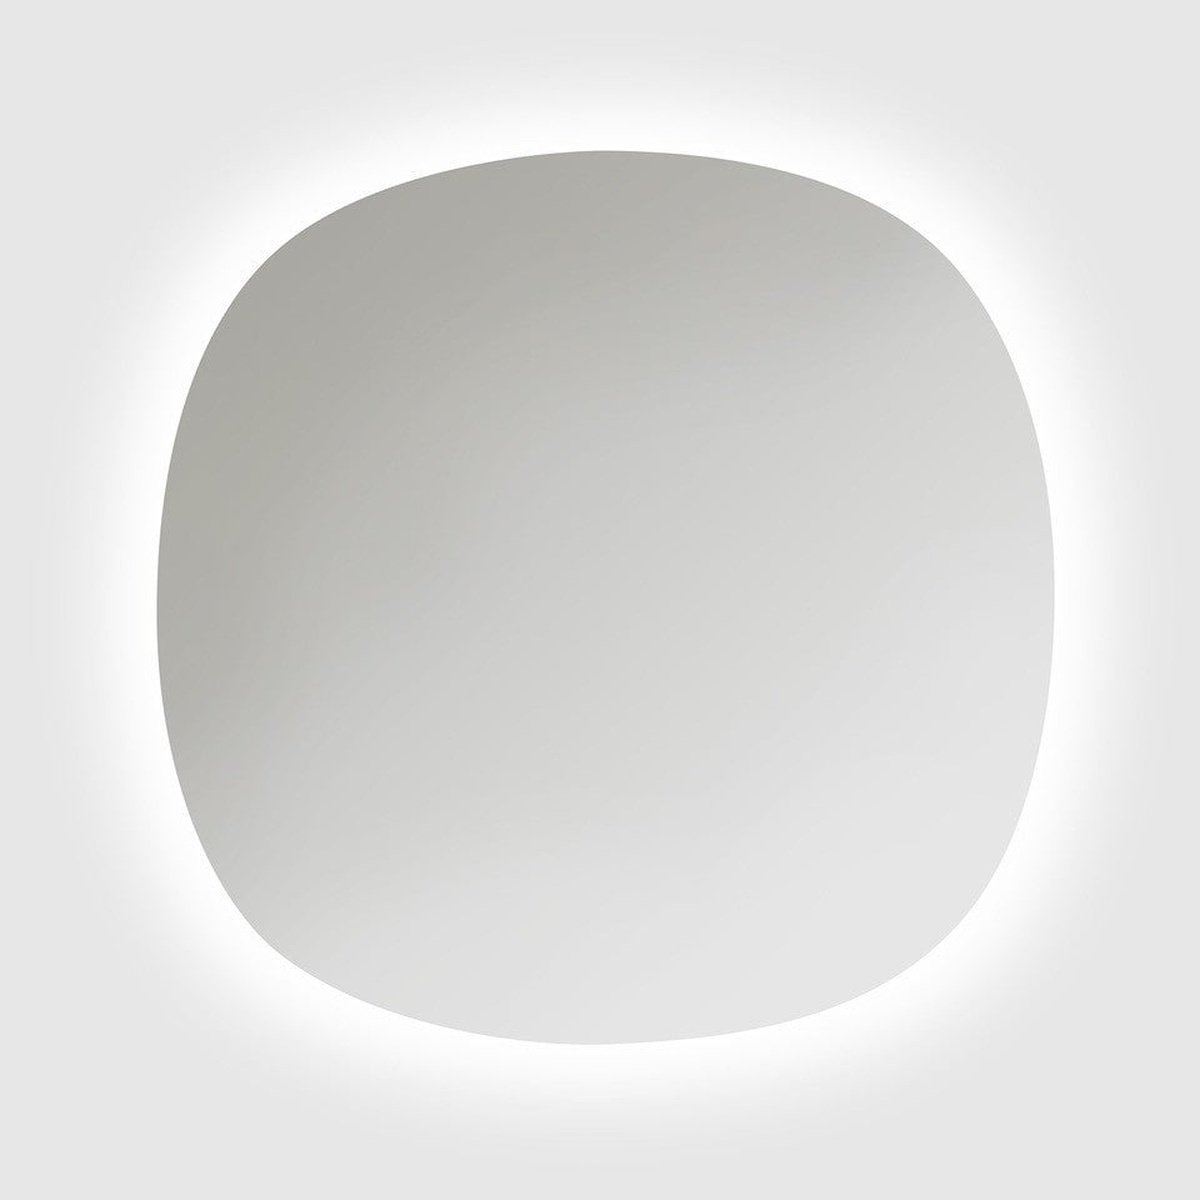 Se HAVEN M2 Oval 120 spejl med belysning hos Bad&Design